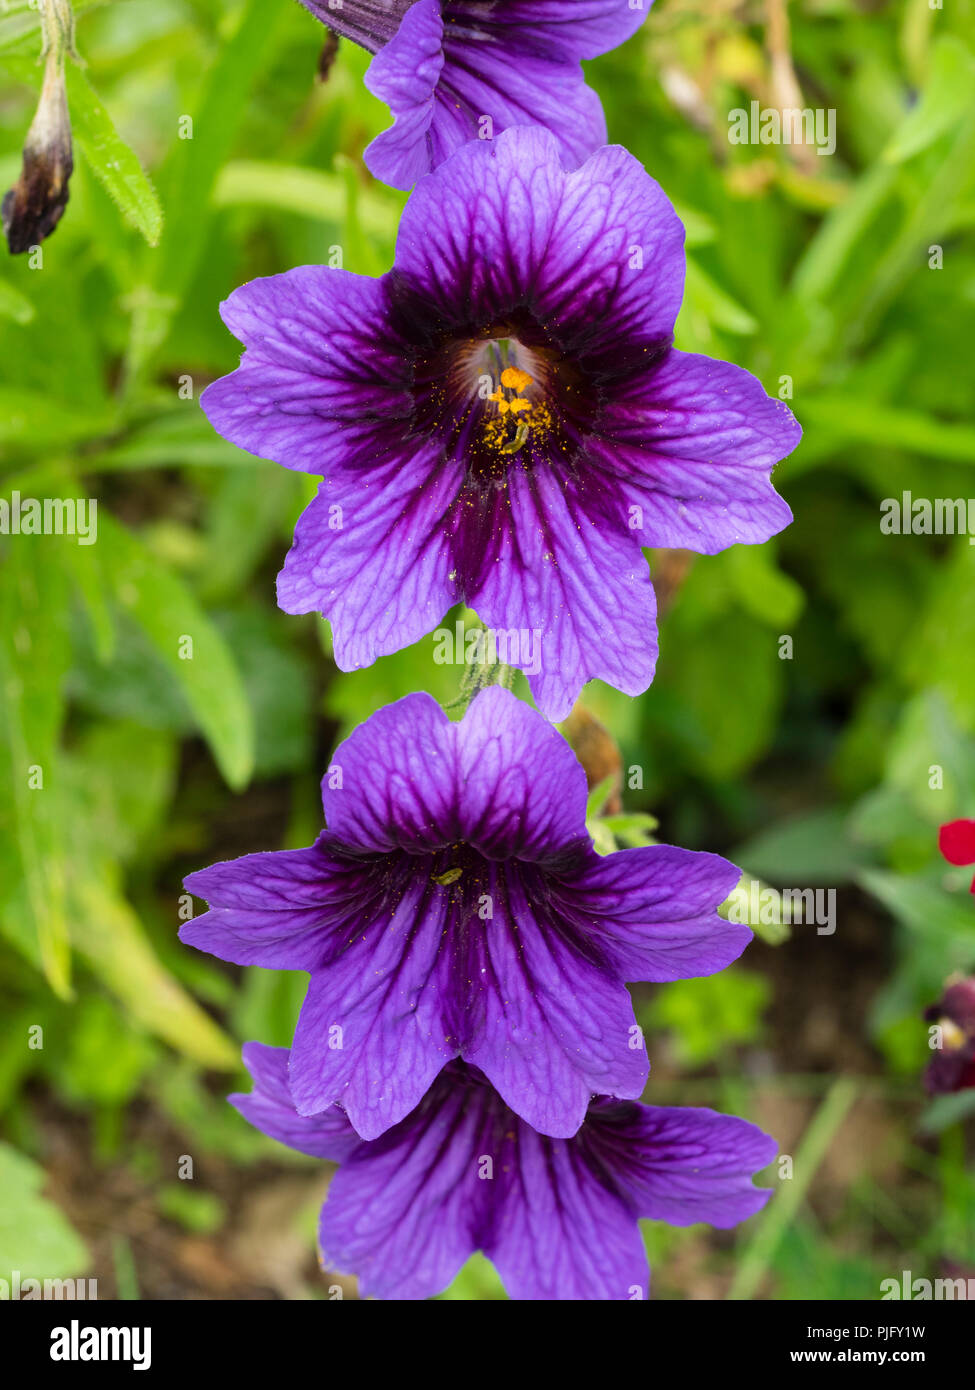 Exotique, velouté, à gorge bleue foncé violet fleurs du vivace plante à massif, Salpiglossis sinuata 'Kew Blue' Banque D'Images